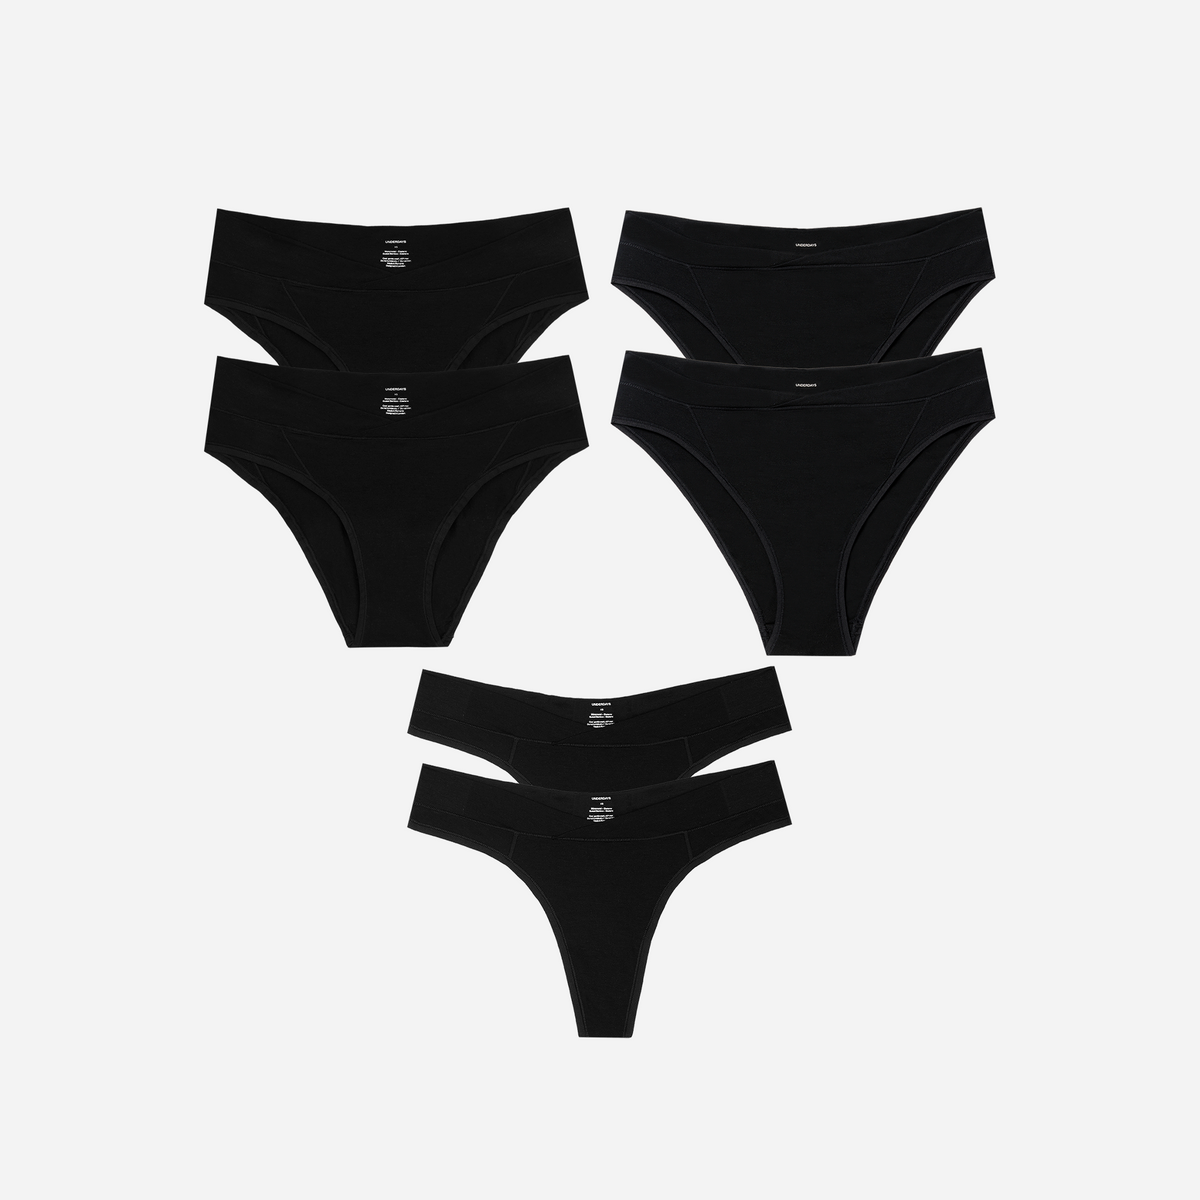 The Underdays Starter Set •  - The underwear you deserve